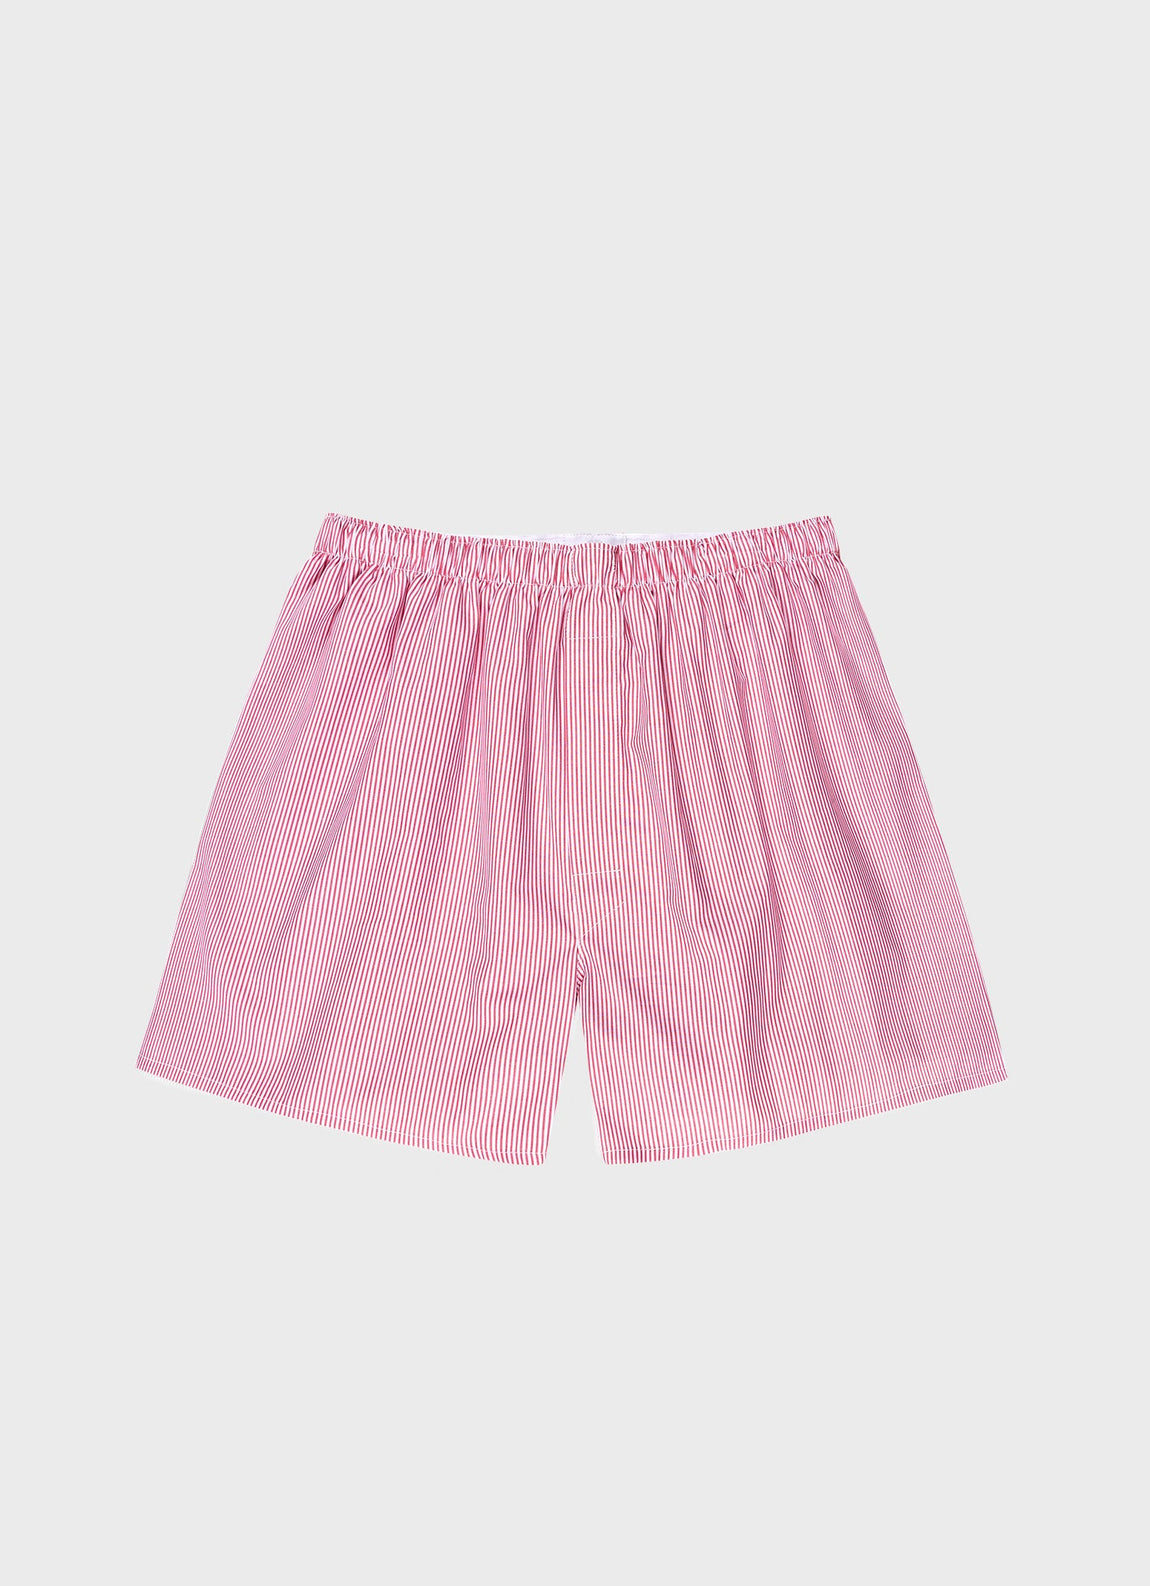 Pink Print Men's Underwear Cotton Summer MID Waist Boxer Shorts